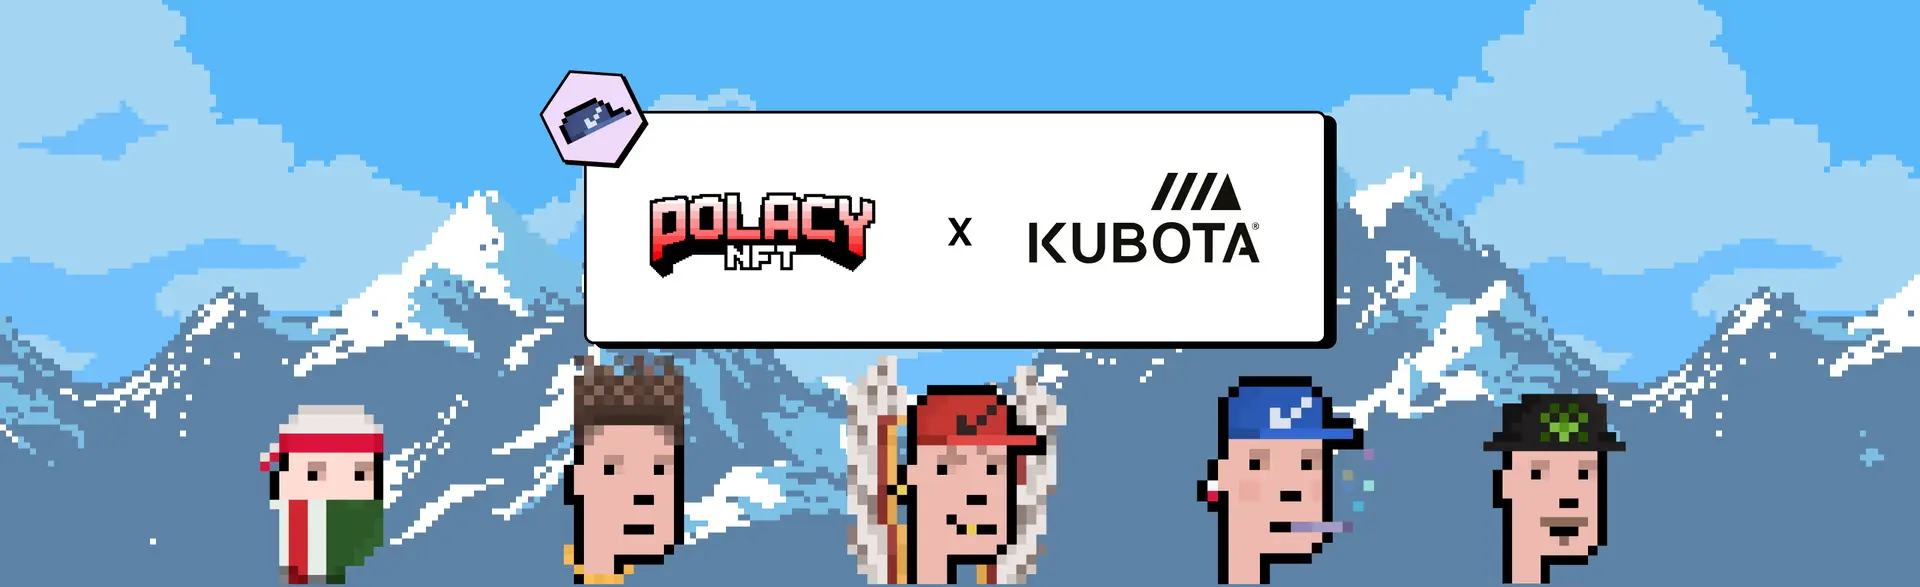 The Polacy x Kubota